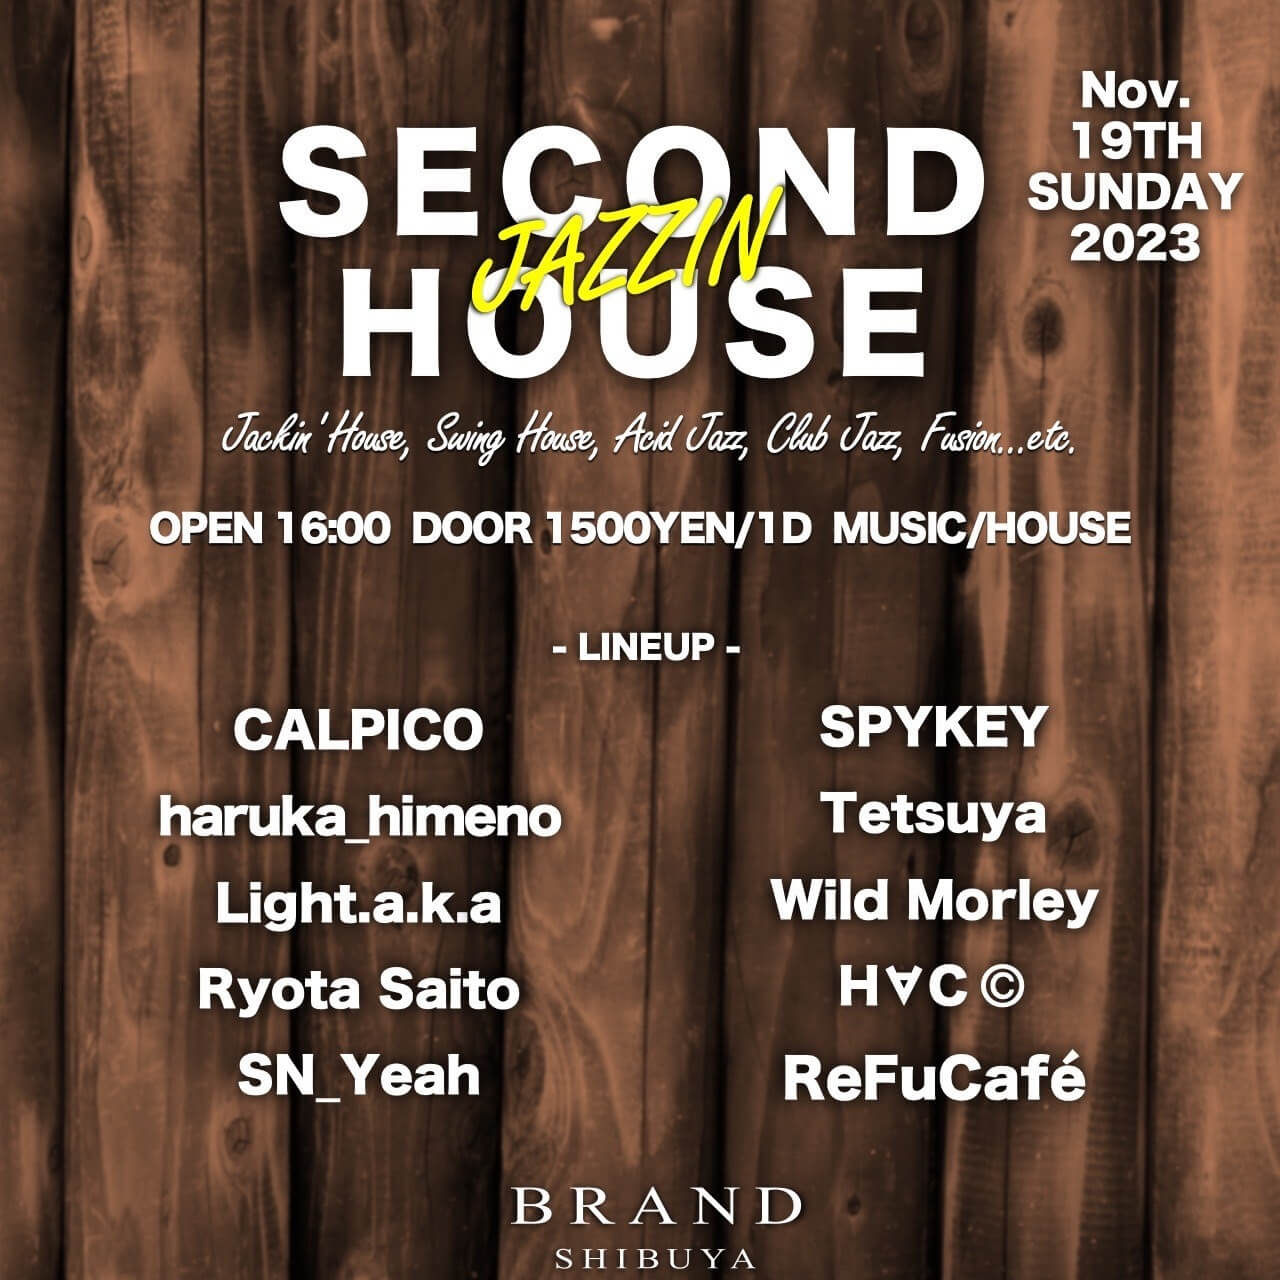 SECOND HOUSE 2023年11月19日（日曜日）に渋谷 クラブのBRAND SHIBUYAで開催されるHOUSEイベント